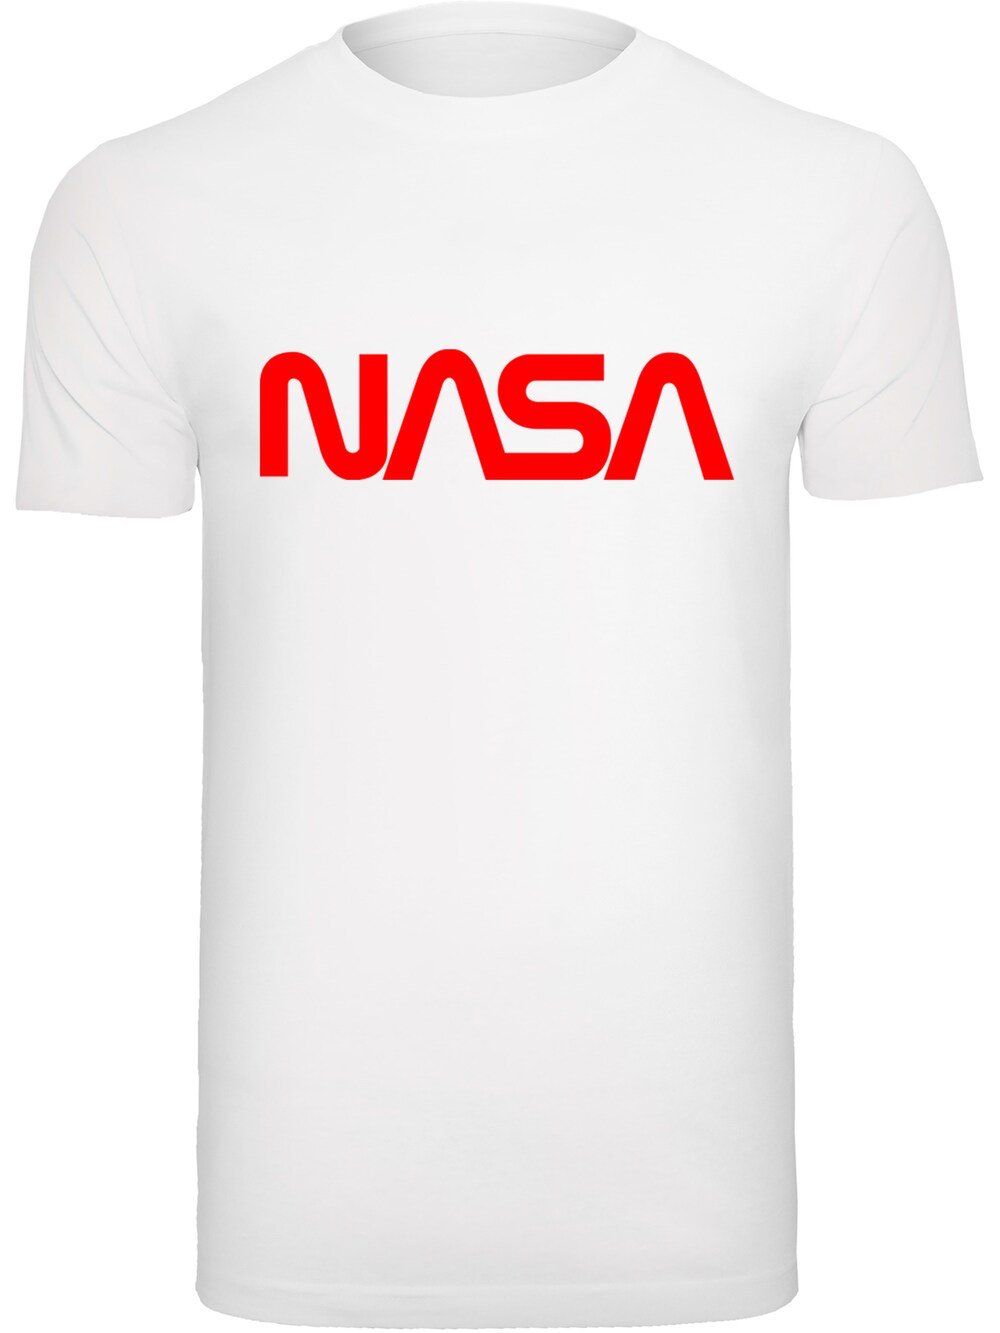 Футболка F4Nt4Stic NASA, белый цена и фото